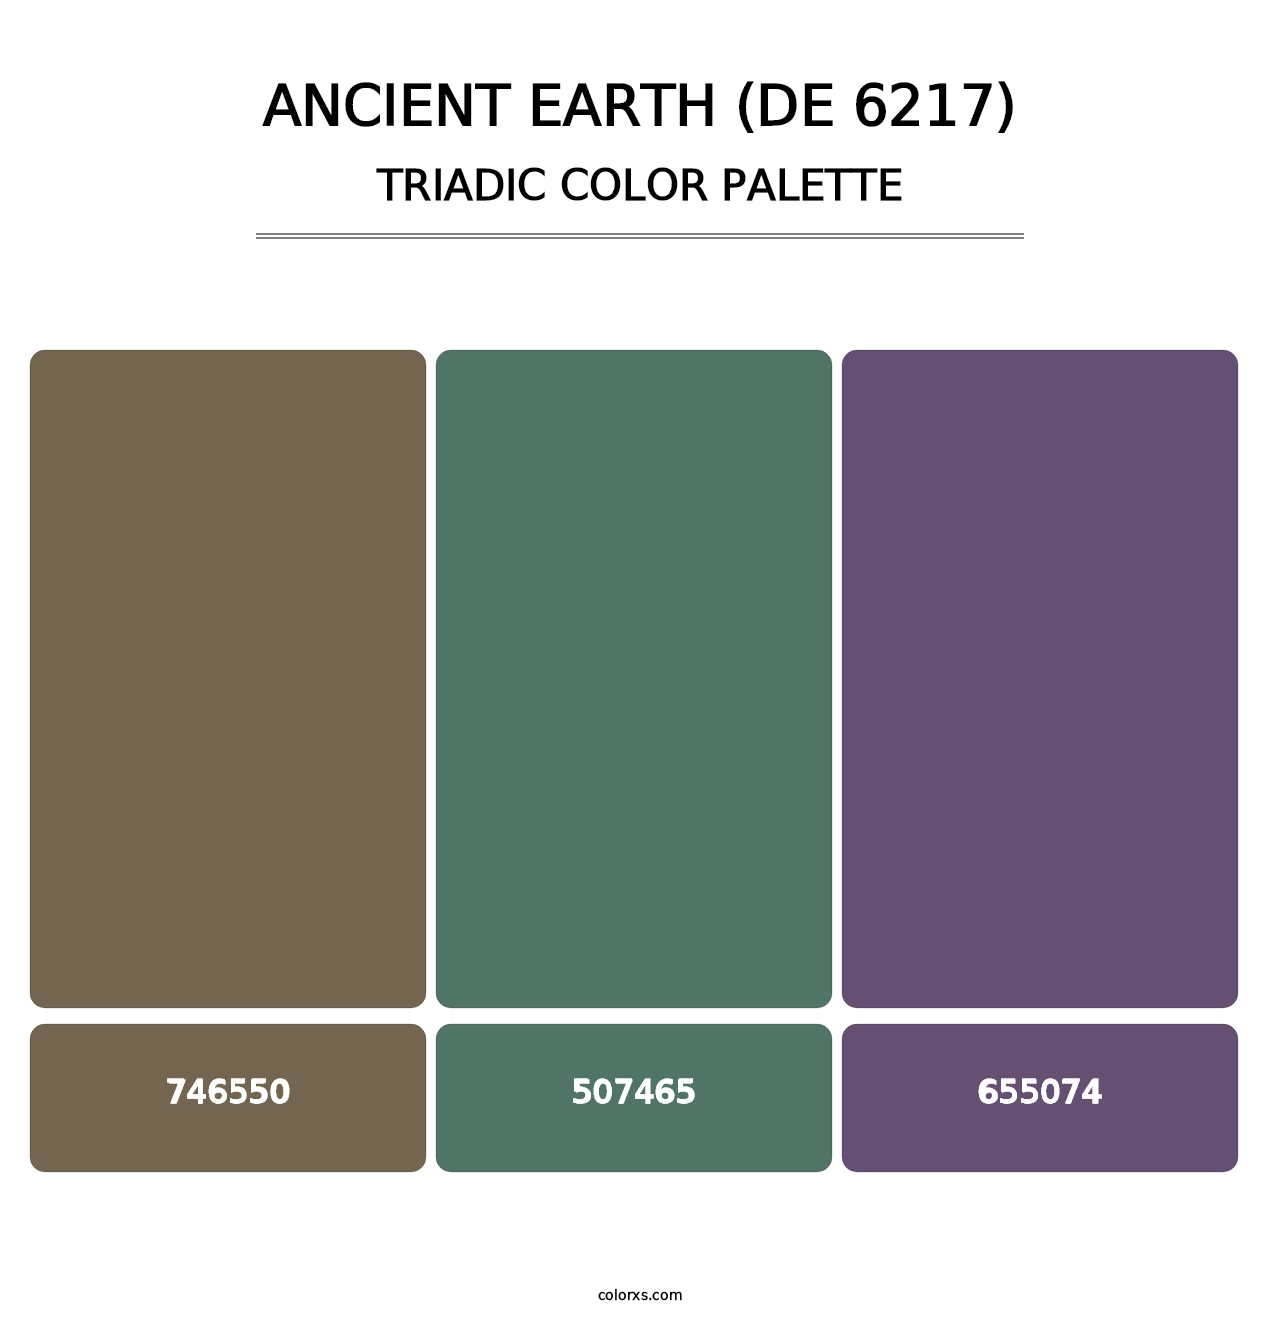 Ancient Earth (DE 6217) - Triadic Color Palette